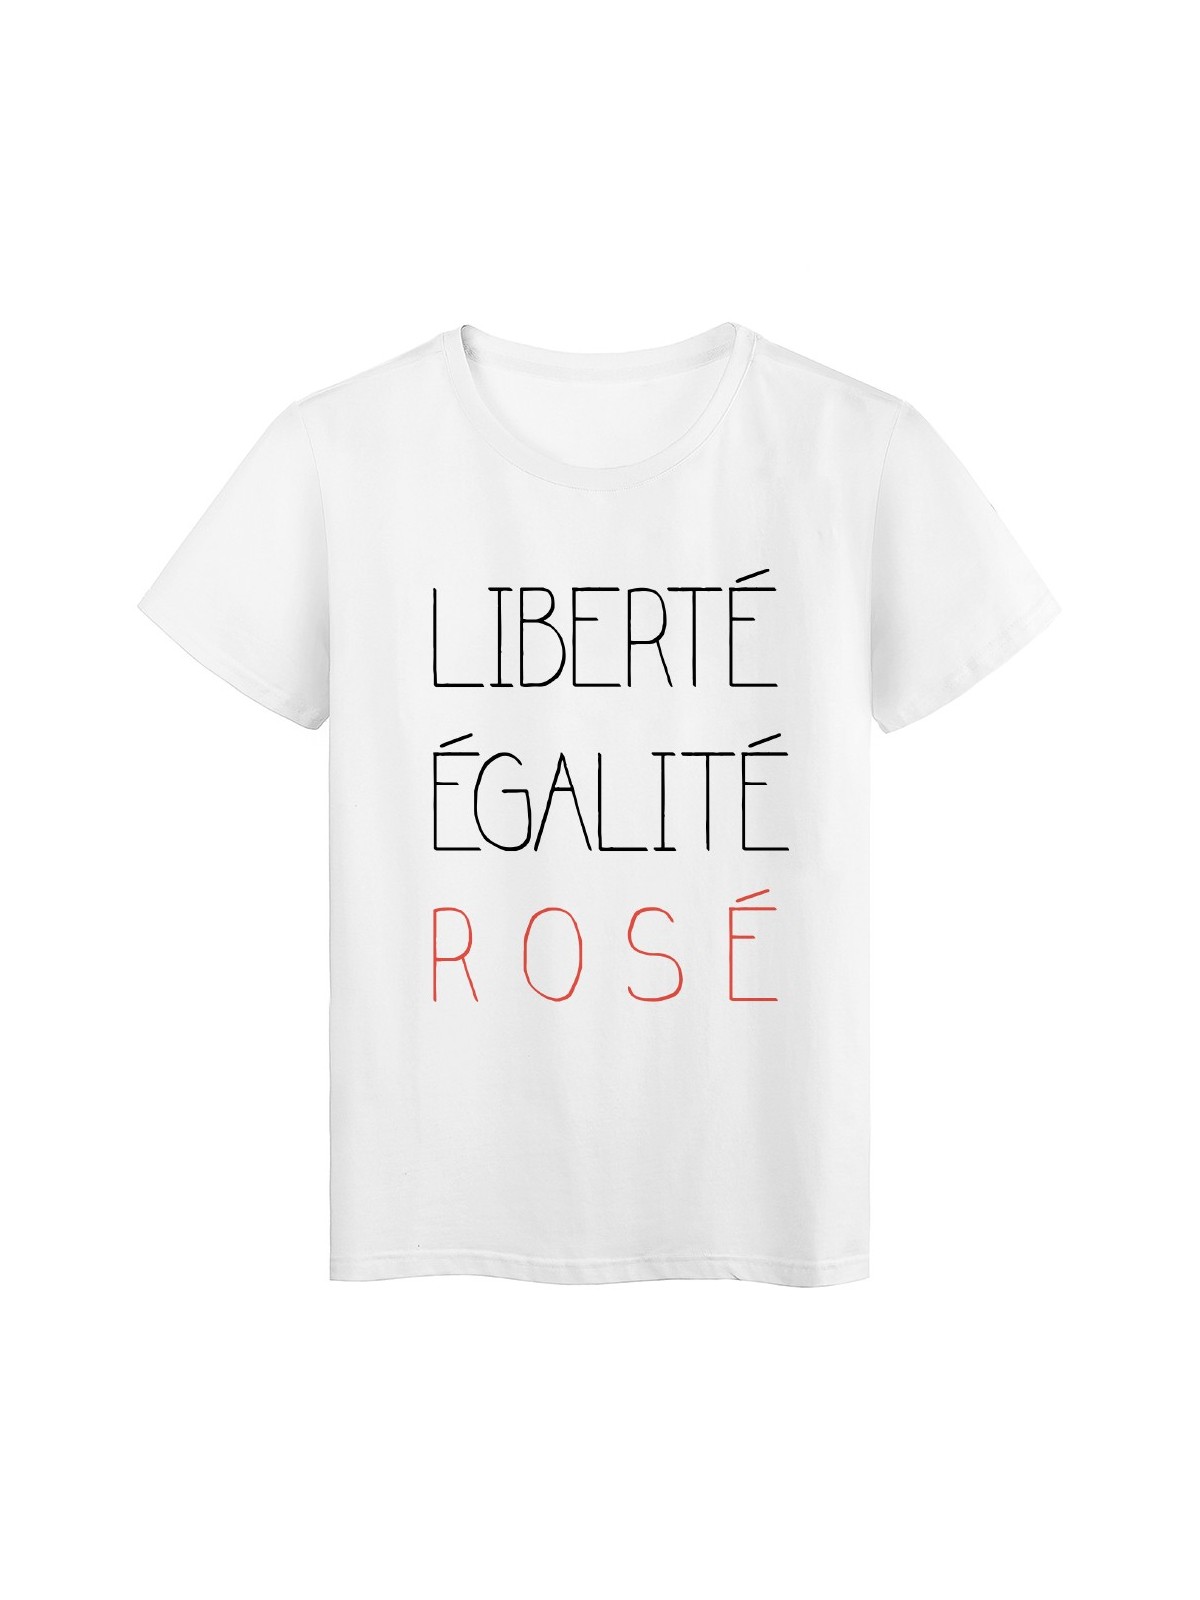 T-Shirt blanc fun libertÃ© egalitÃ© rosÃ©